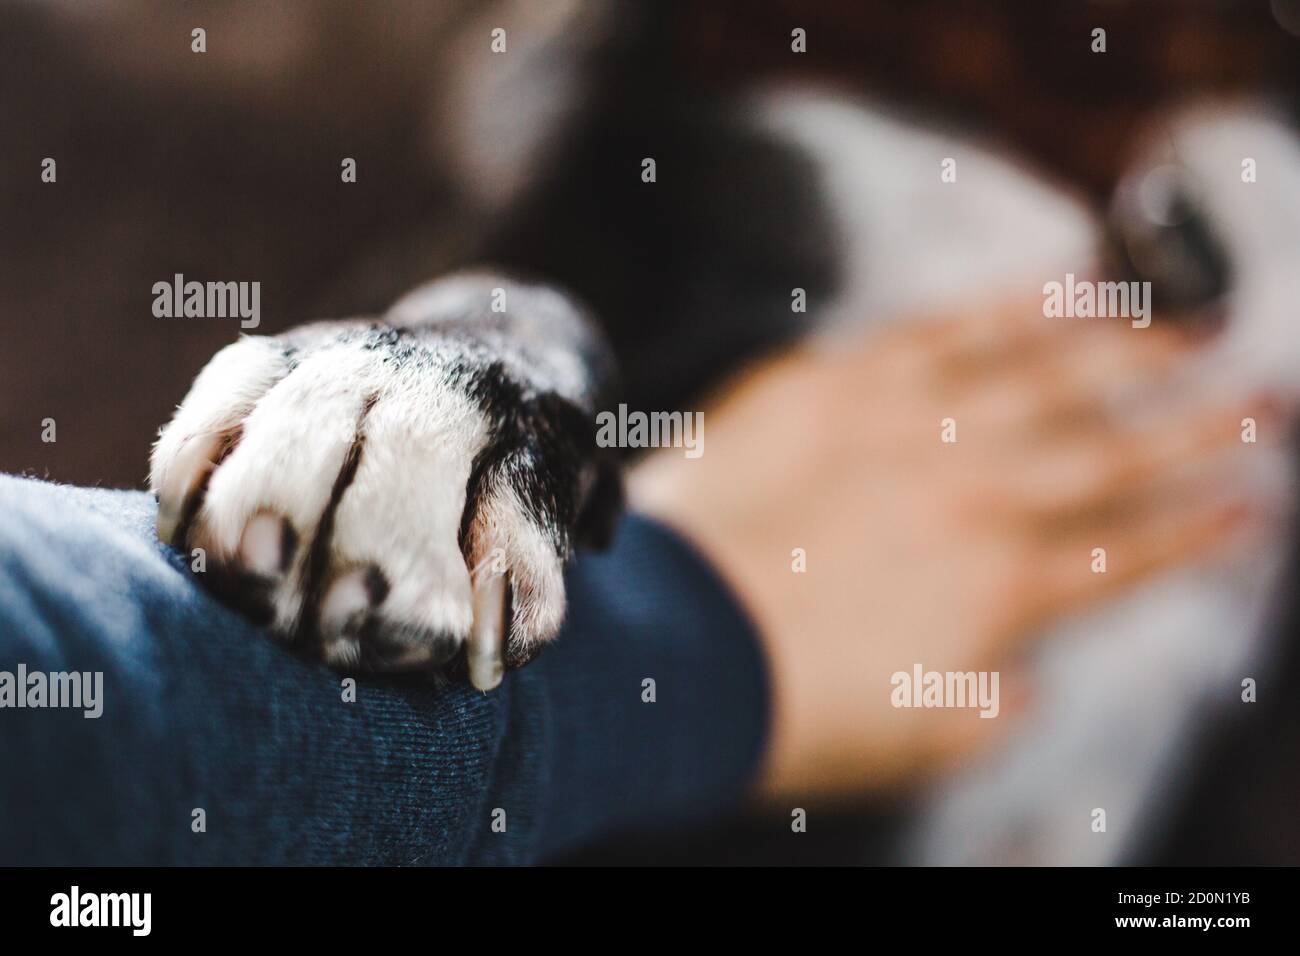 Soignante Staffordshire Bull terrier race bully chien place avec amour son patte blanche sur le bras de l'homme tout en recevant un frottement du ventre Banque D'Images